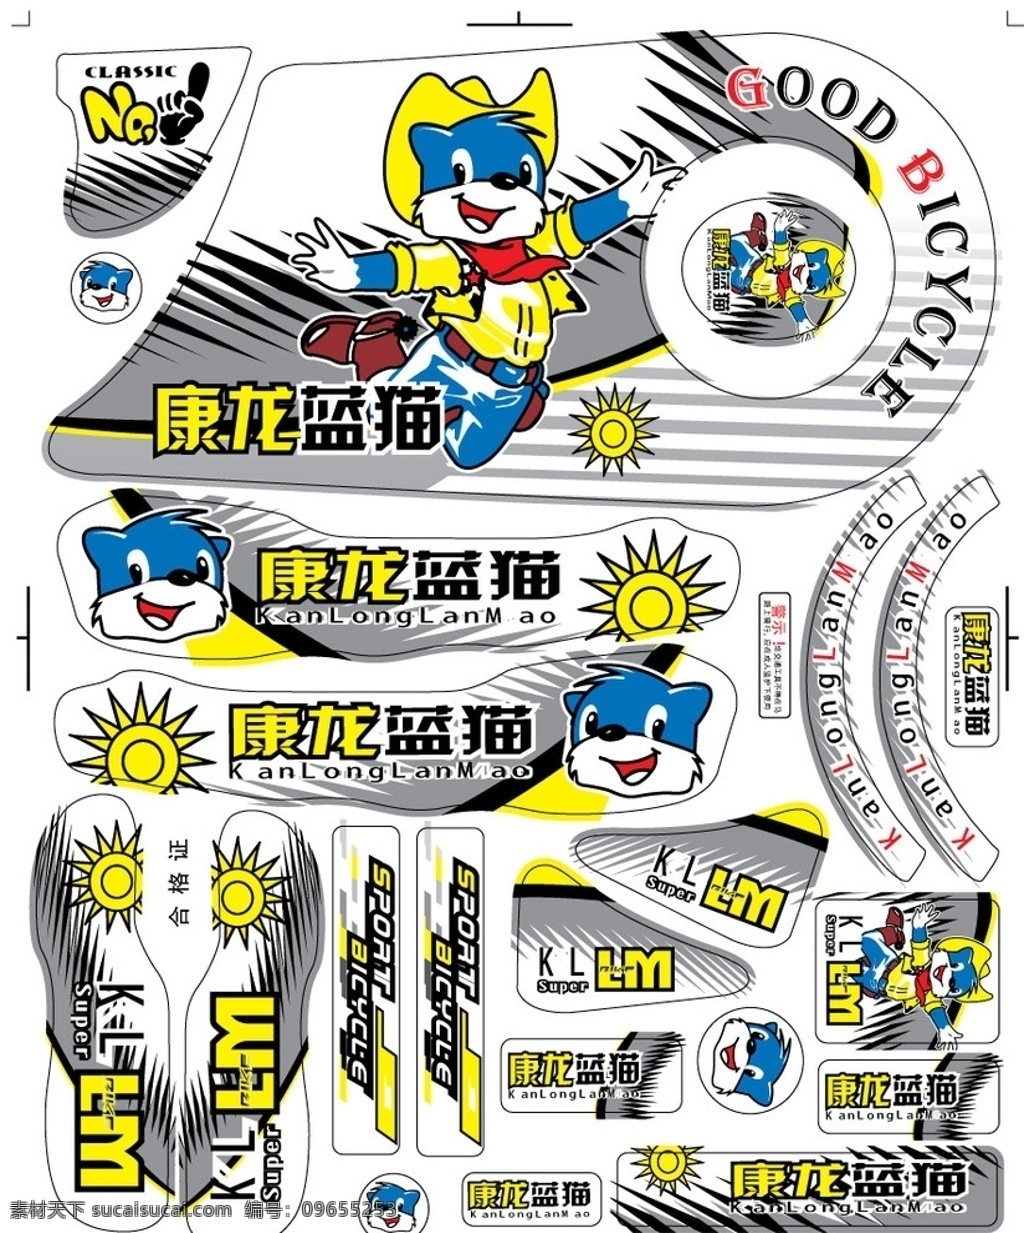 康龙牌 蓝猫 自行车 贴花 贴纸 商标 蓝色 黄色 卡通设计 矢量